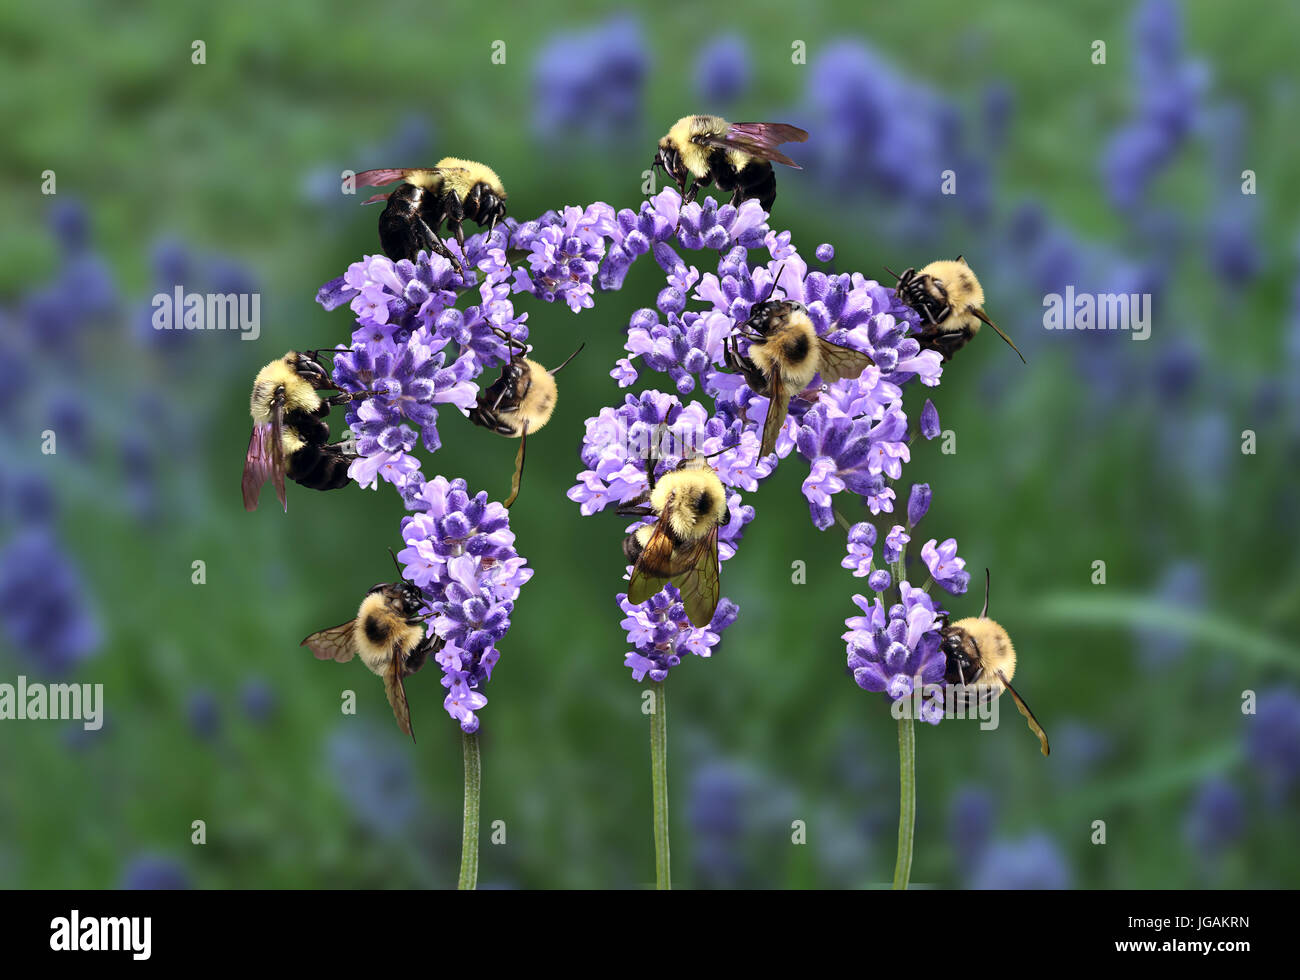 Concept d'équipe à l'échelle mondiale et la stratégie internationale en tant que groupe de travail de l'ensemble de la récolte du nectar d'abeilles une fleur en forme de globe terrestre. Banque D'Images